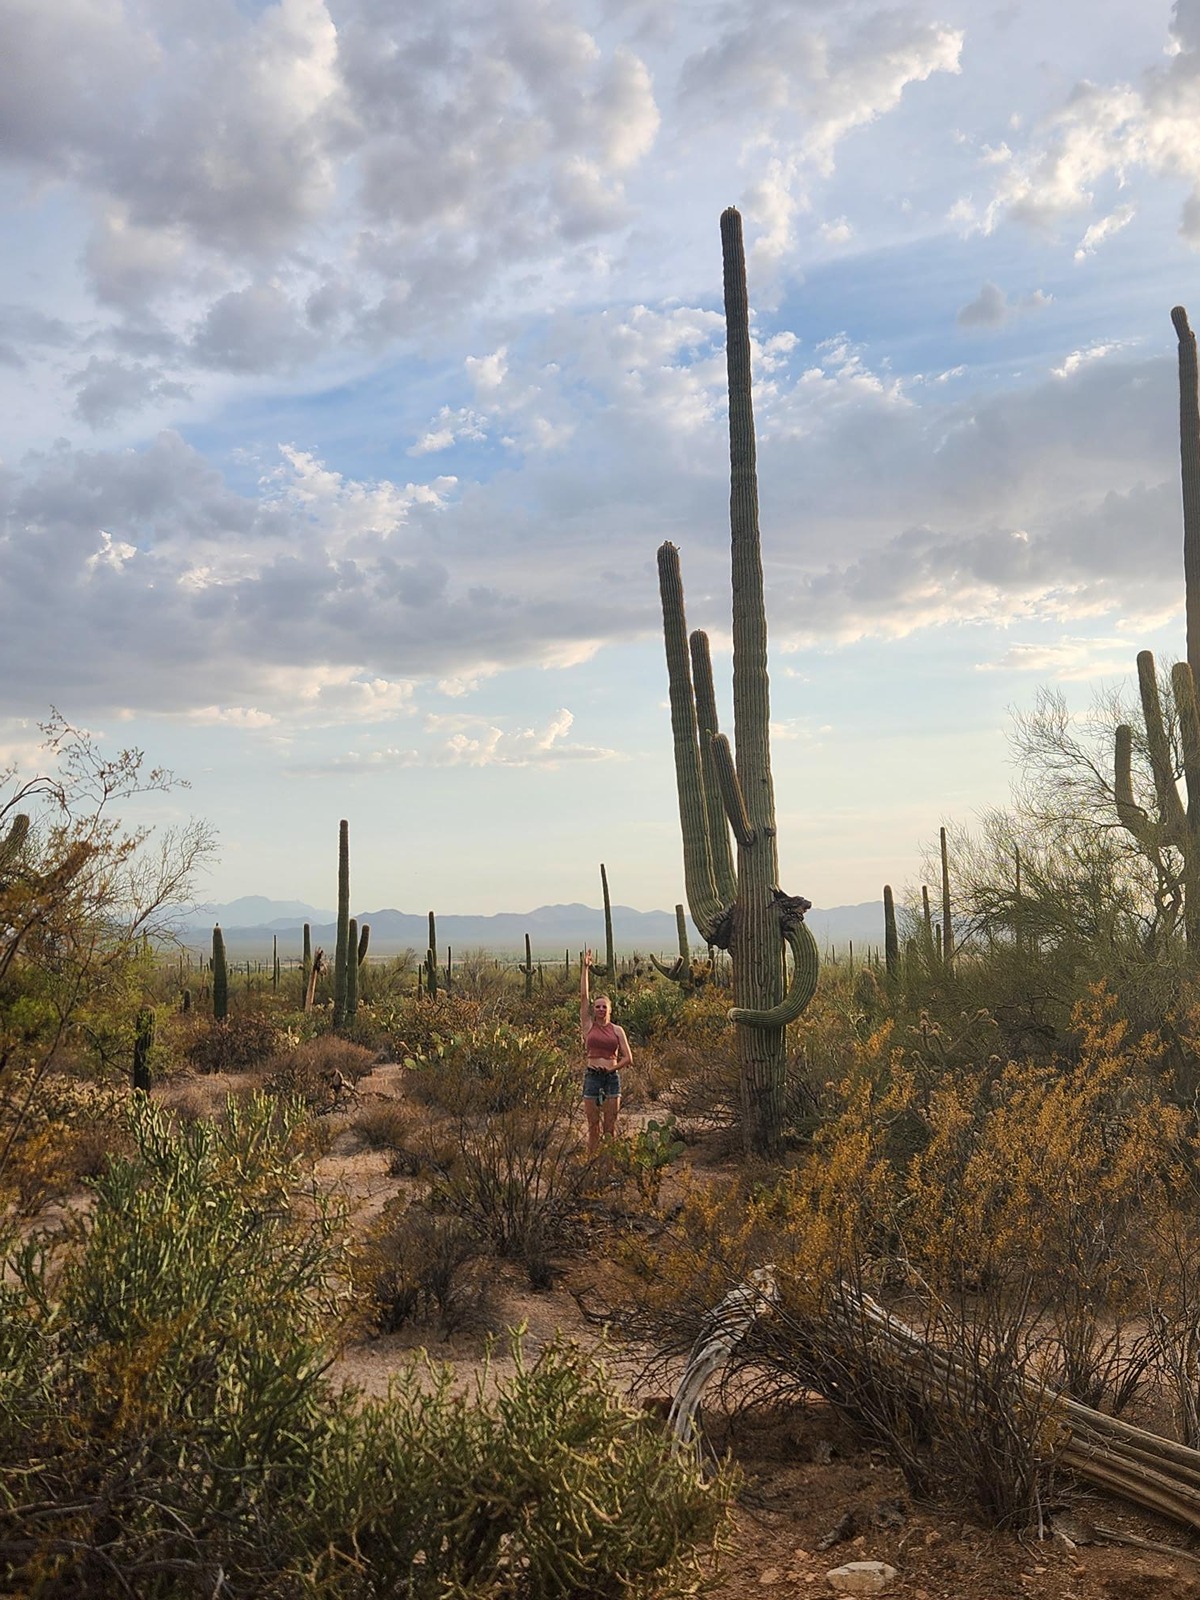 Julia Raising her hands up to mimic a saguaro cactus